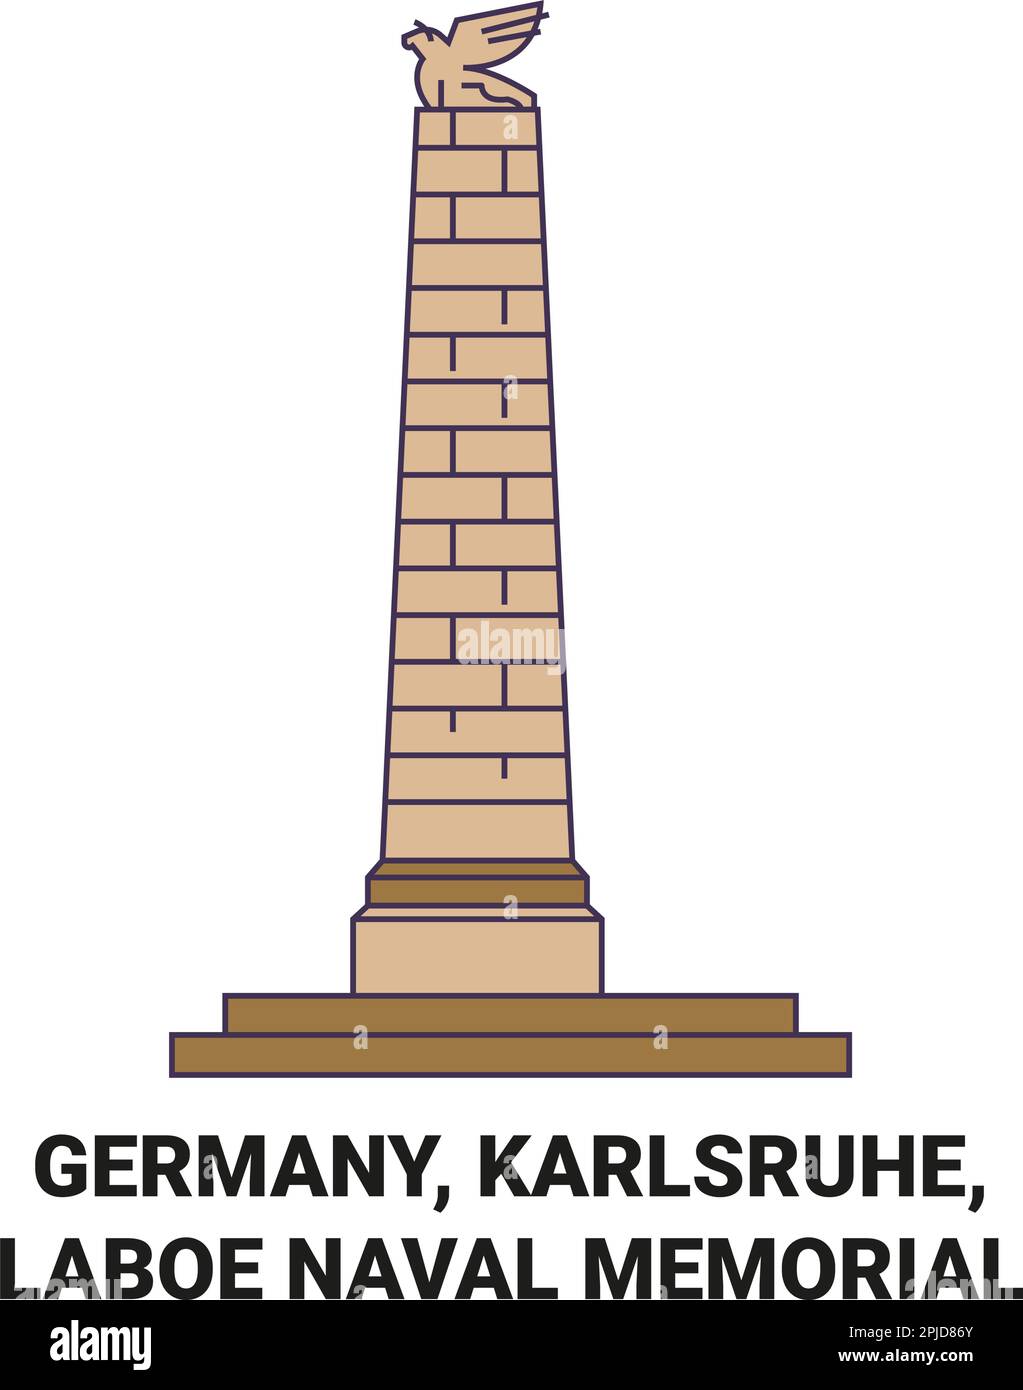 Germany, Karlsruhe, Laboe Naval Memorial travel landmark vector illustration Stock Vector